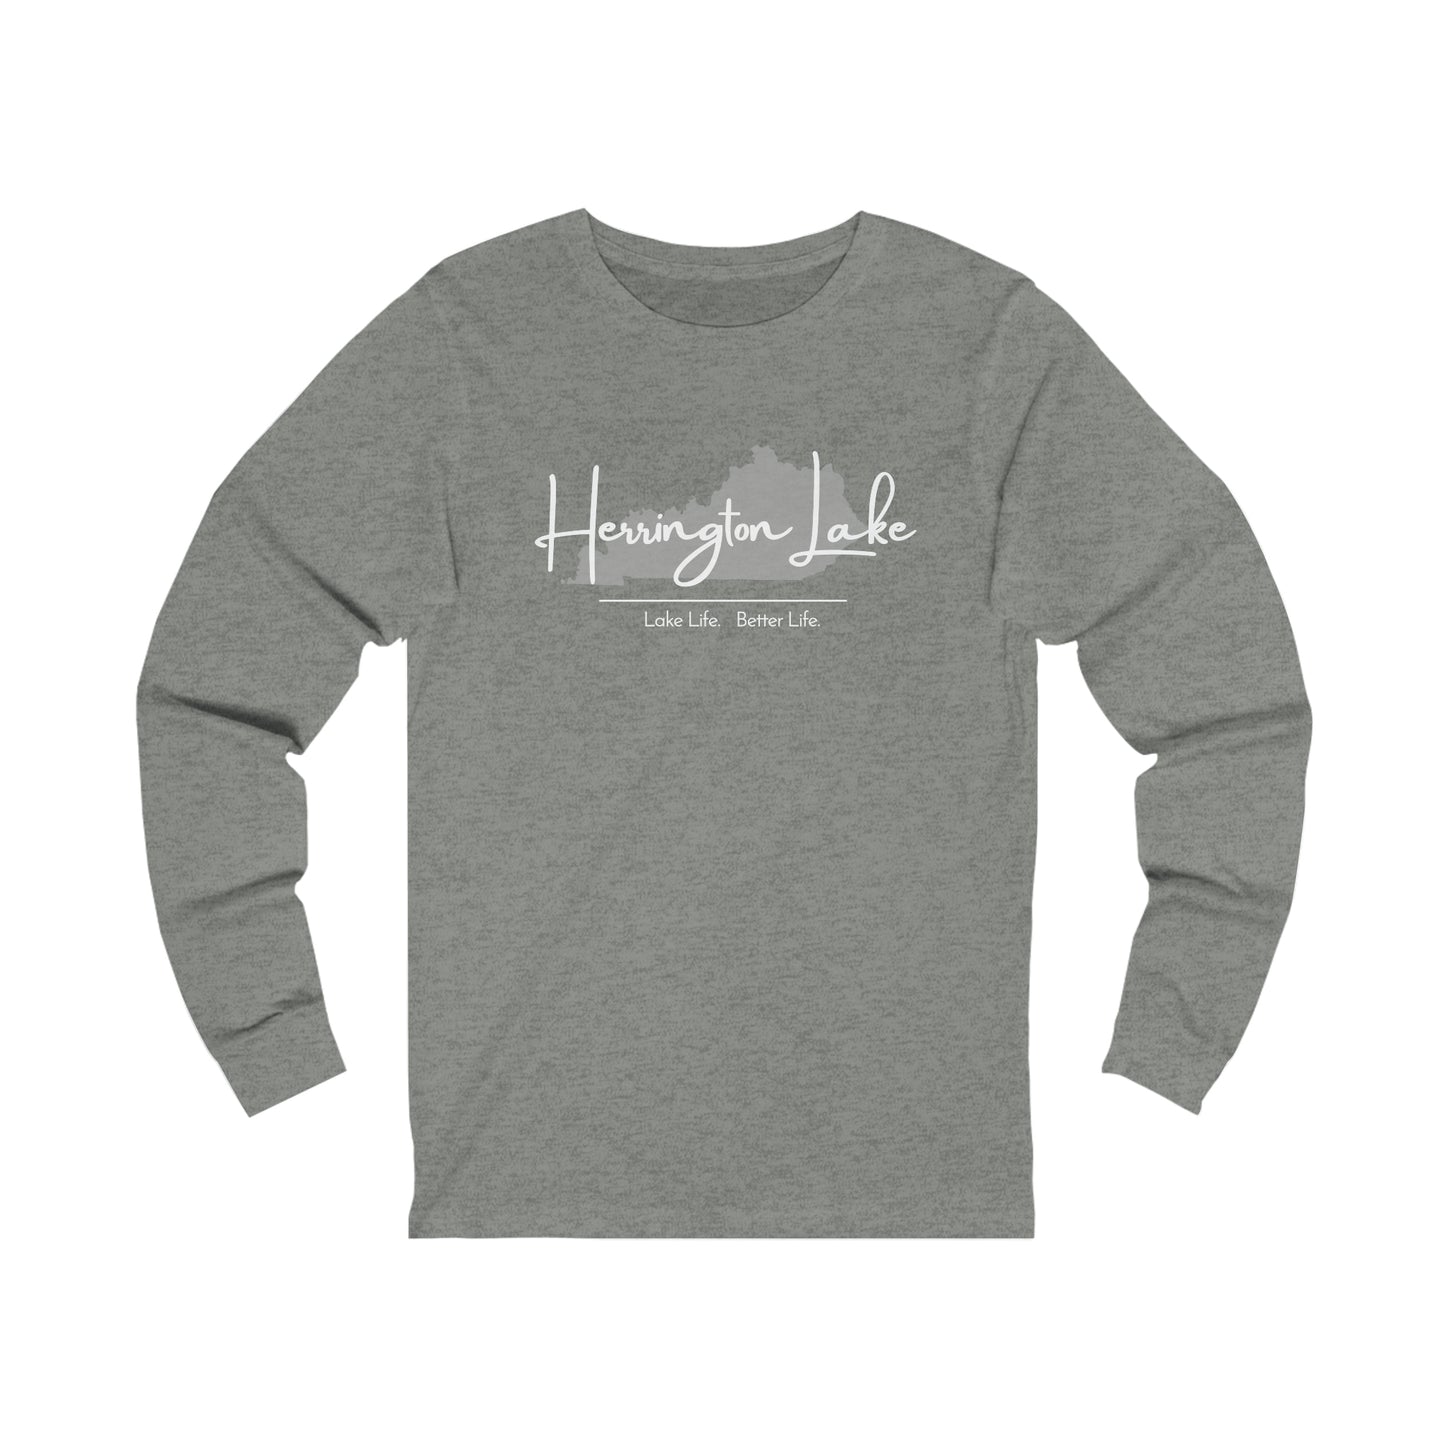 Herrington Lake Signature Collection JerseyKnit Cotton Long Sleeve Tee